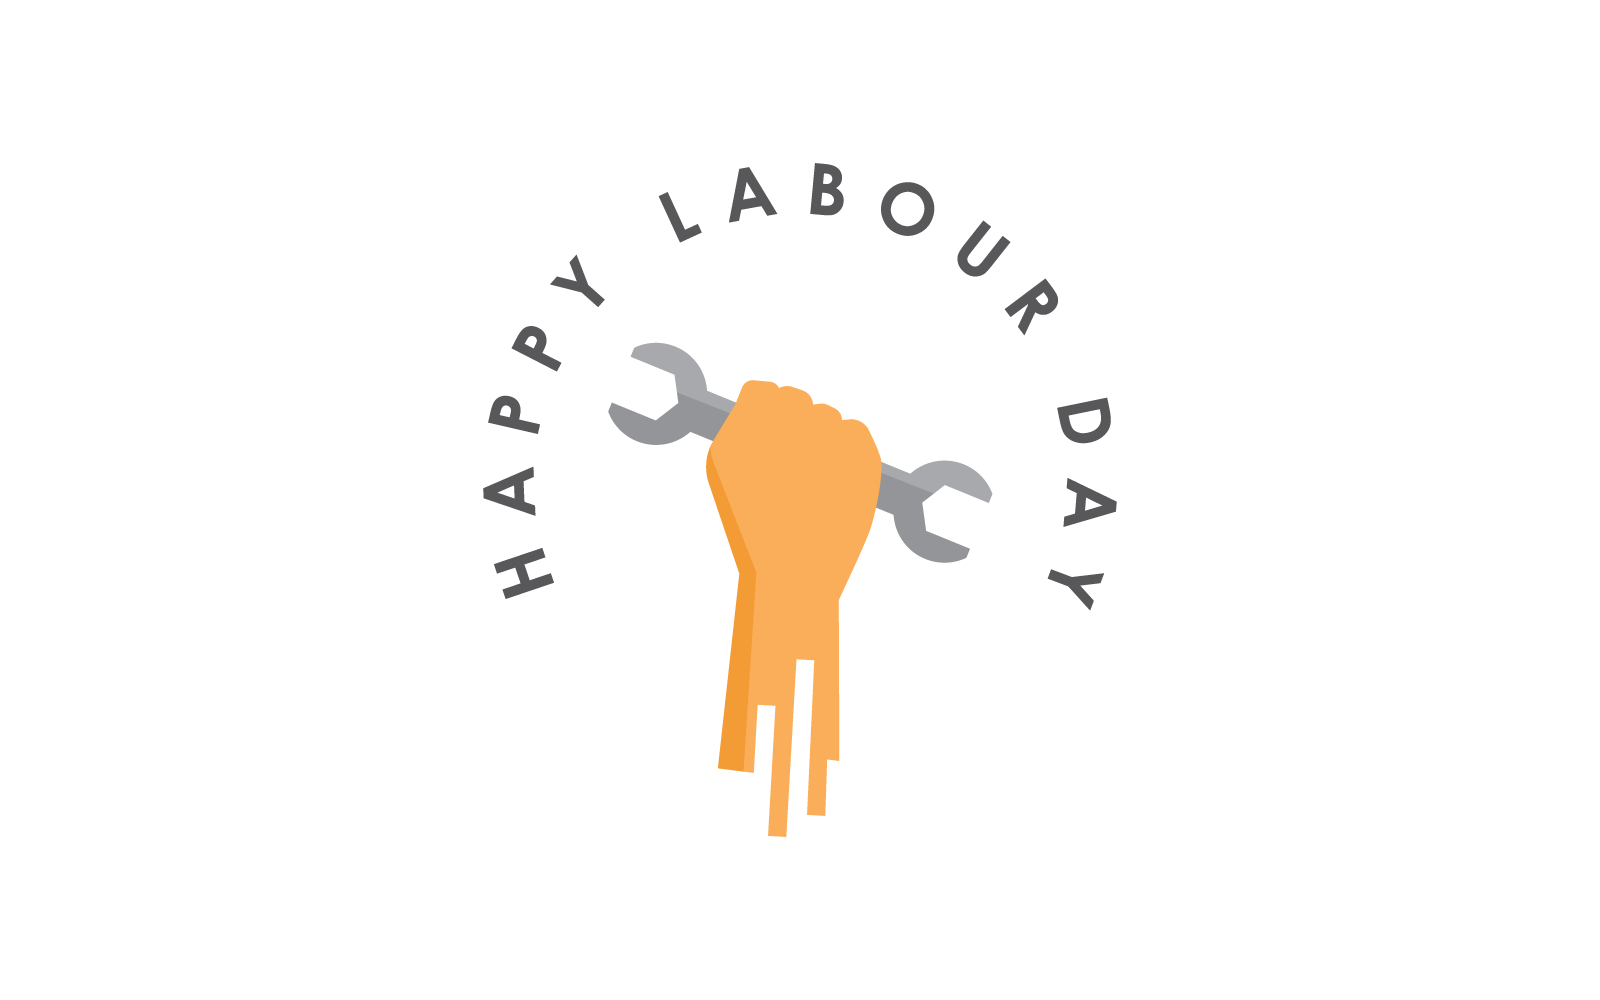 Щасливий день праці 1 травня символ і логотип плоский дизайн